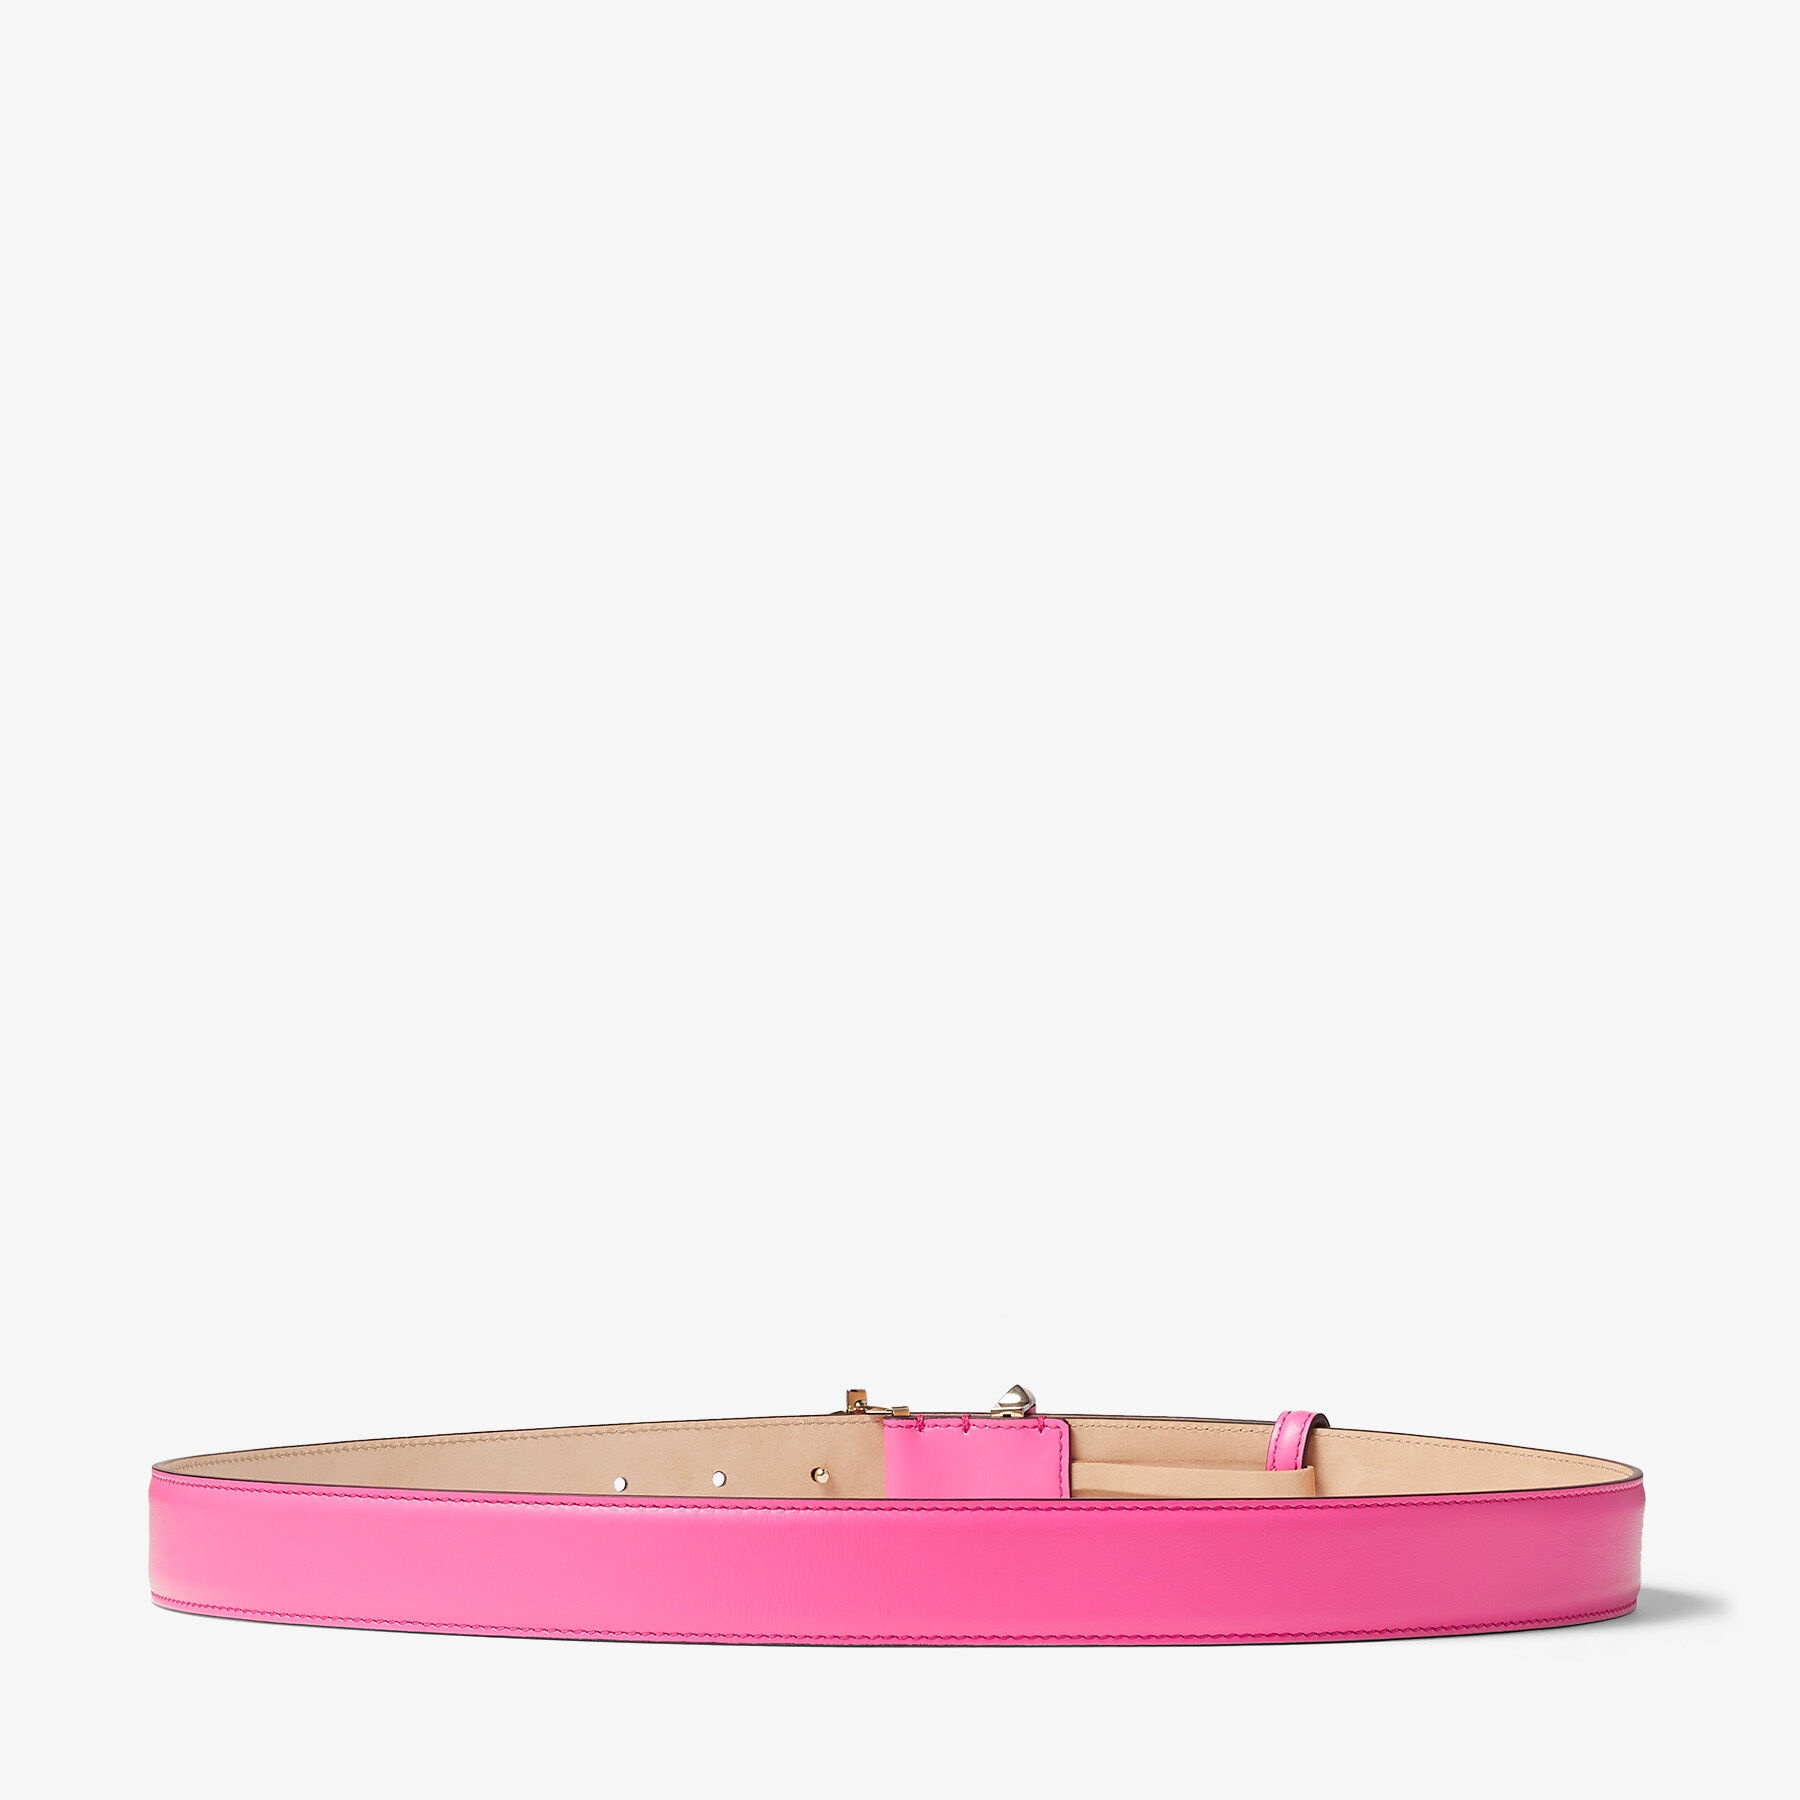 Jc-bar Blt
Candy Pink Calf Leather Bar Belt with JC Emblem - 3